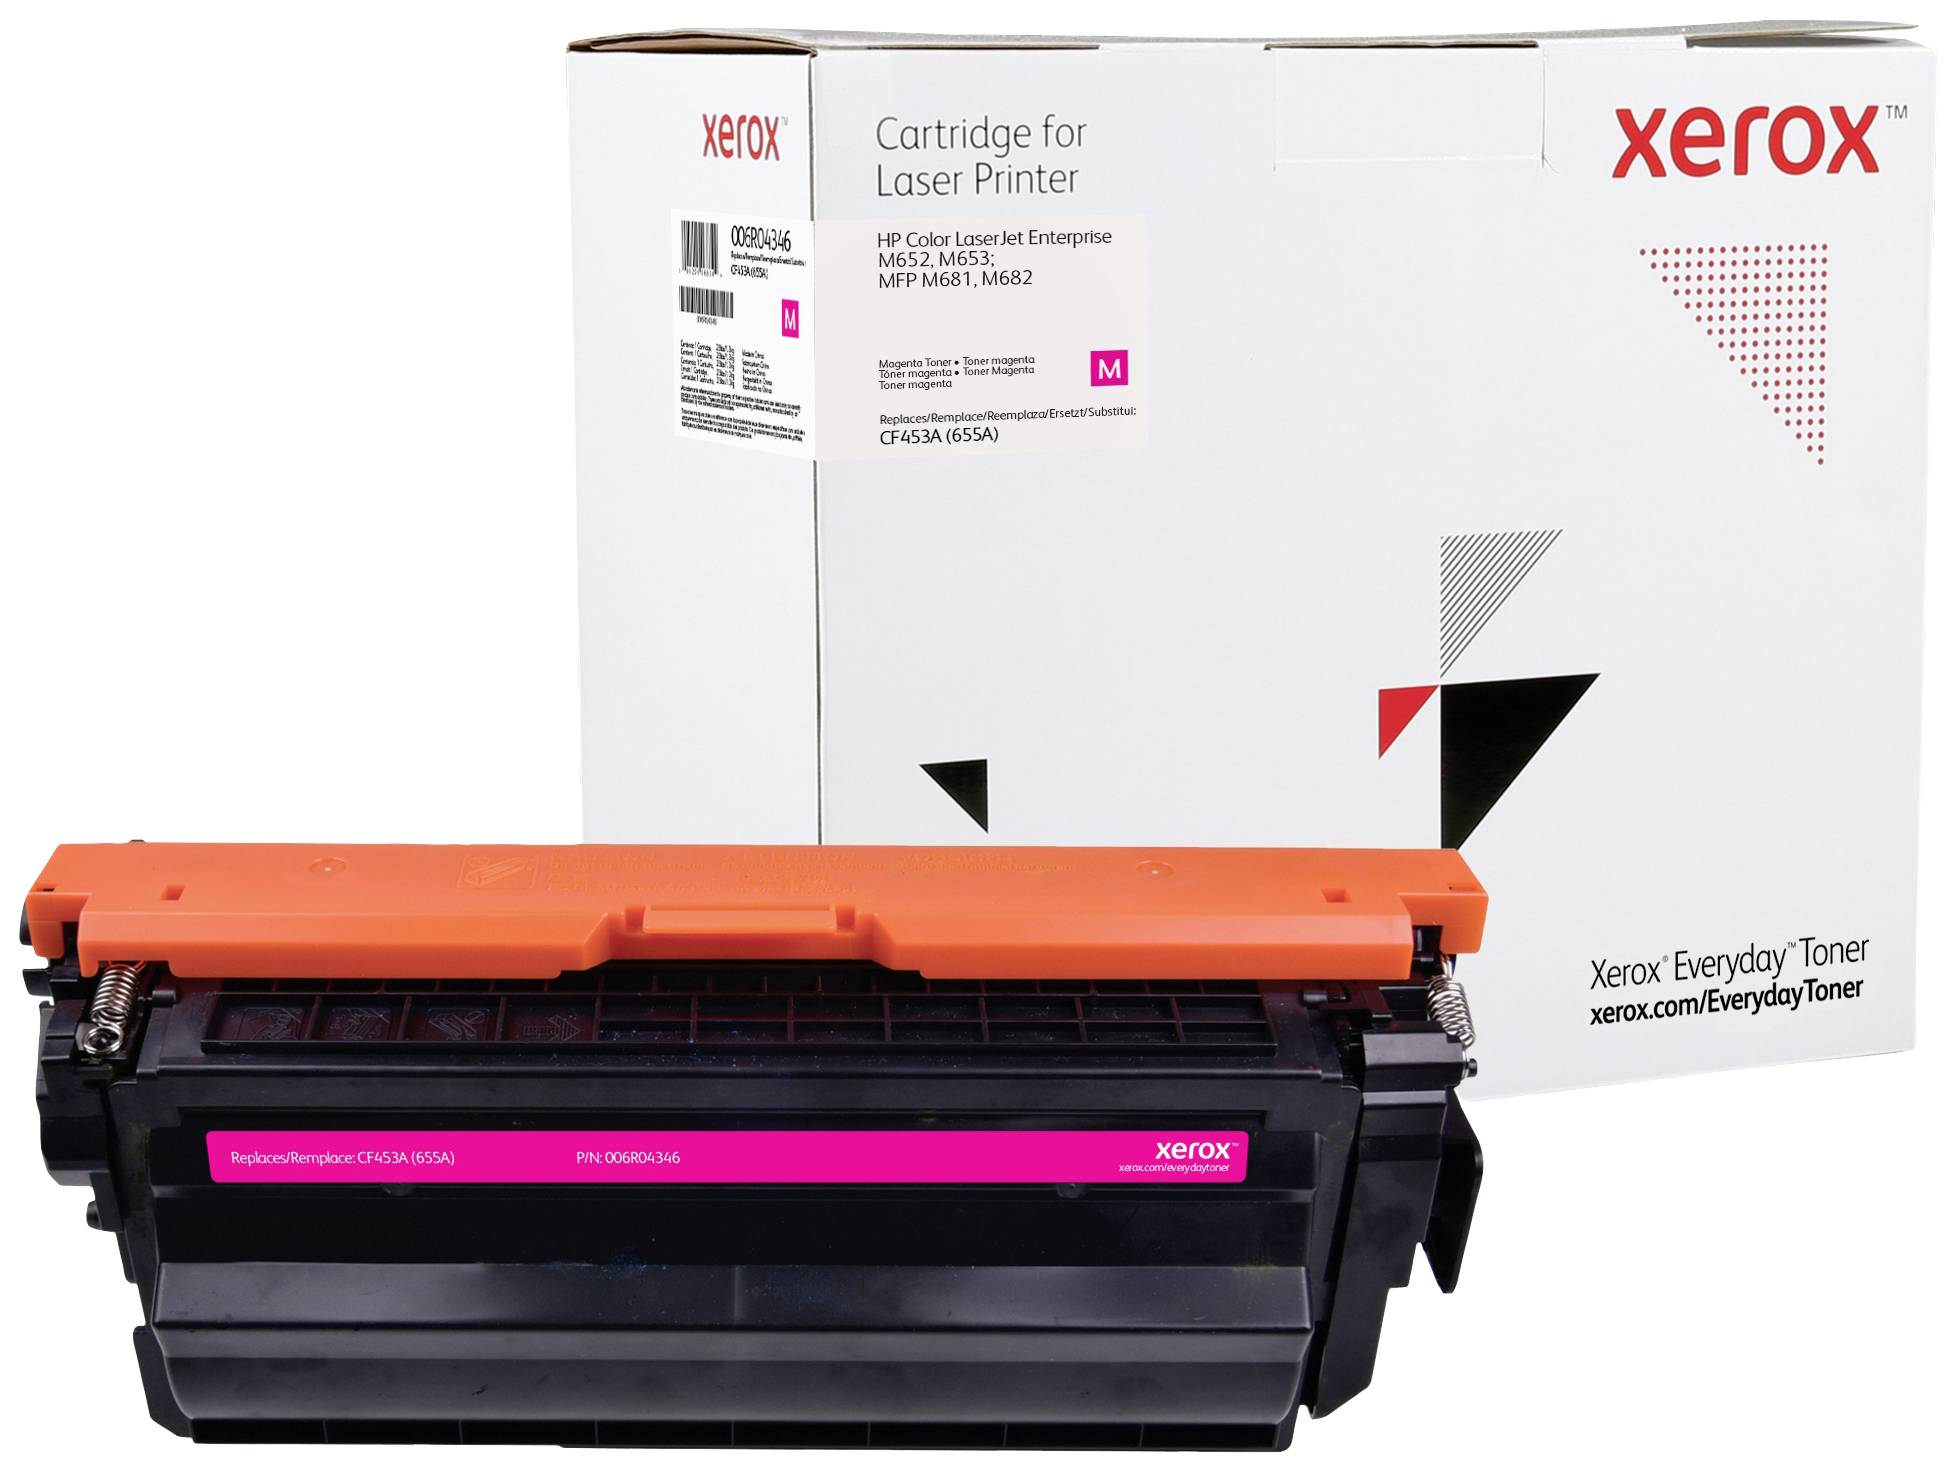 Xerox Everyday Toner Single náhradní HP 655A (CF453A) purppurová 10500 Seiten kompatibilní toner